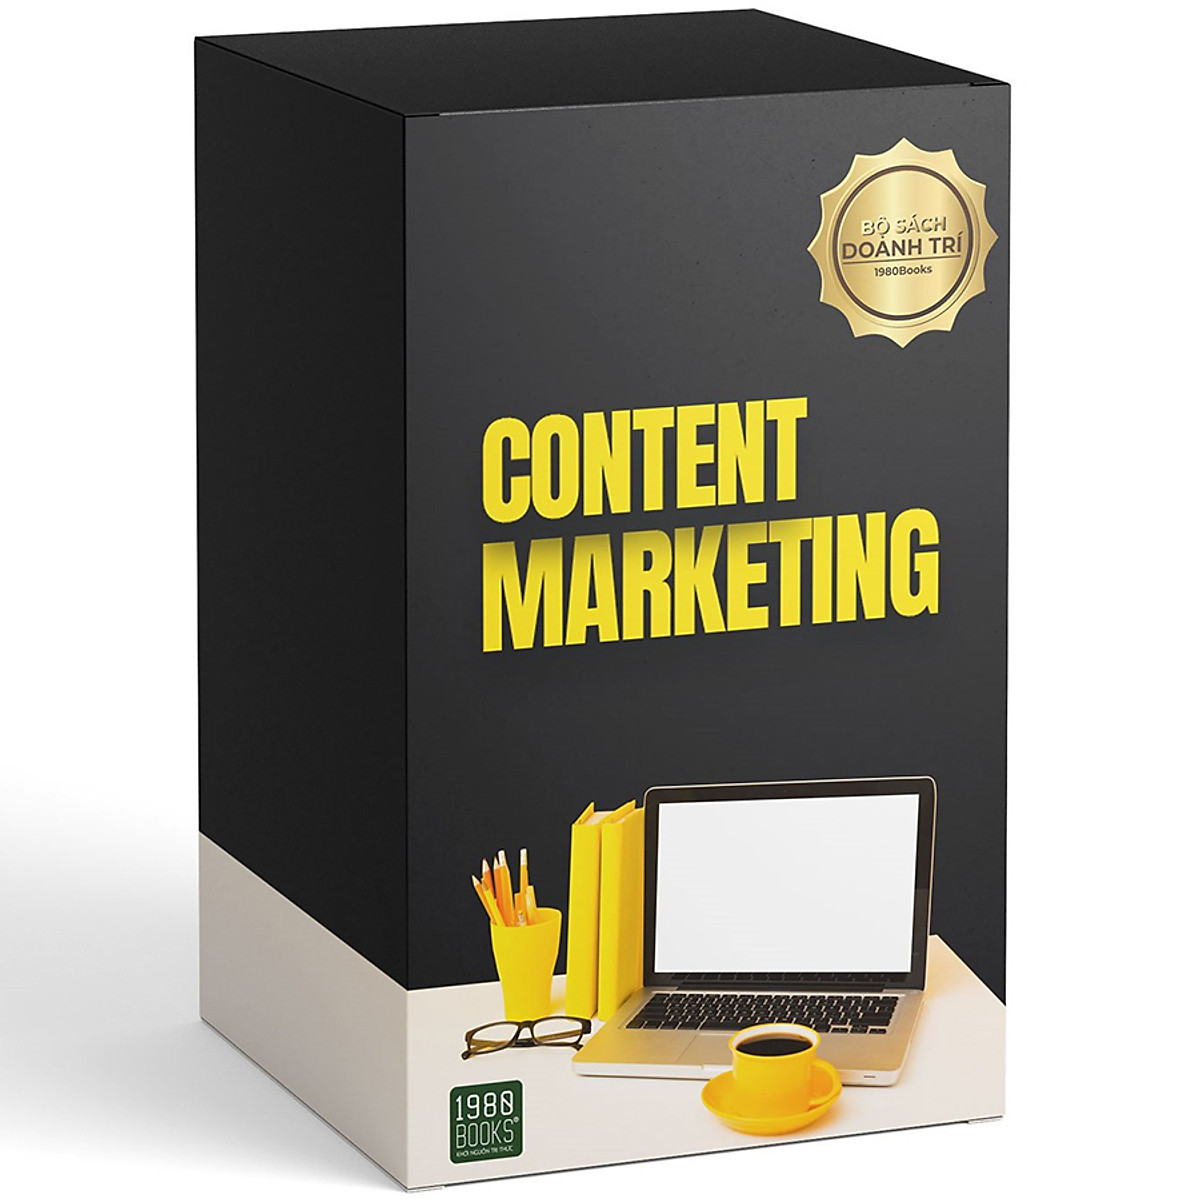 Hộp Sách (Gồm 3 Cuốn) Content Marketing: Content Marketing Trong Kỷ Nguyên 4.0 + Content Marketing Trong Kỷ Nguyên Trải Nghiệm Khách Hàng + Dùng Chữ Sao Cho Đúng  Viết Gì Cũng Thấy Hay